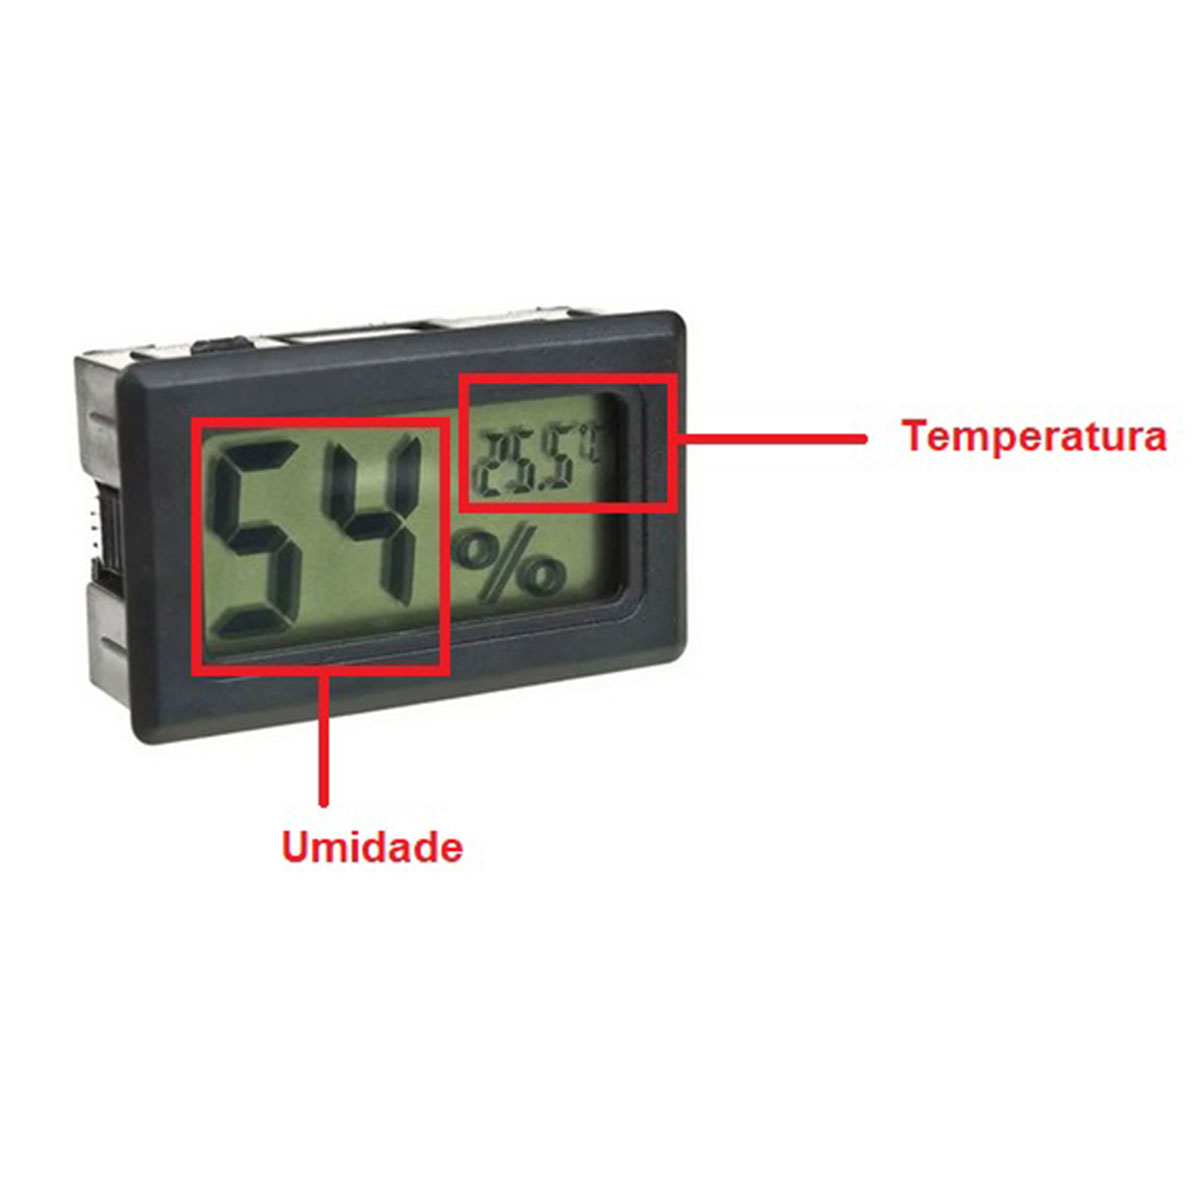 Mini Termômetro - Higrômetro Digital / Mede Temperatura e Umidade COM Baterias - Preto